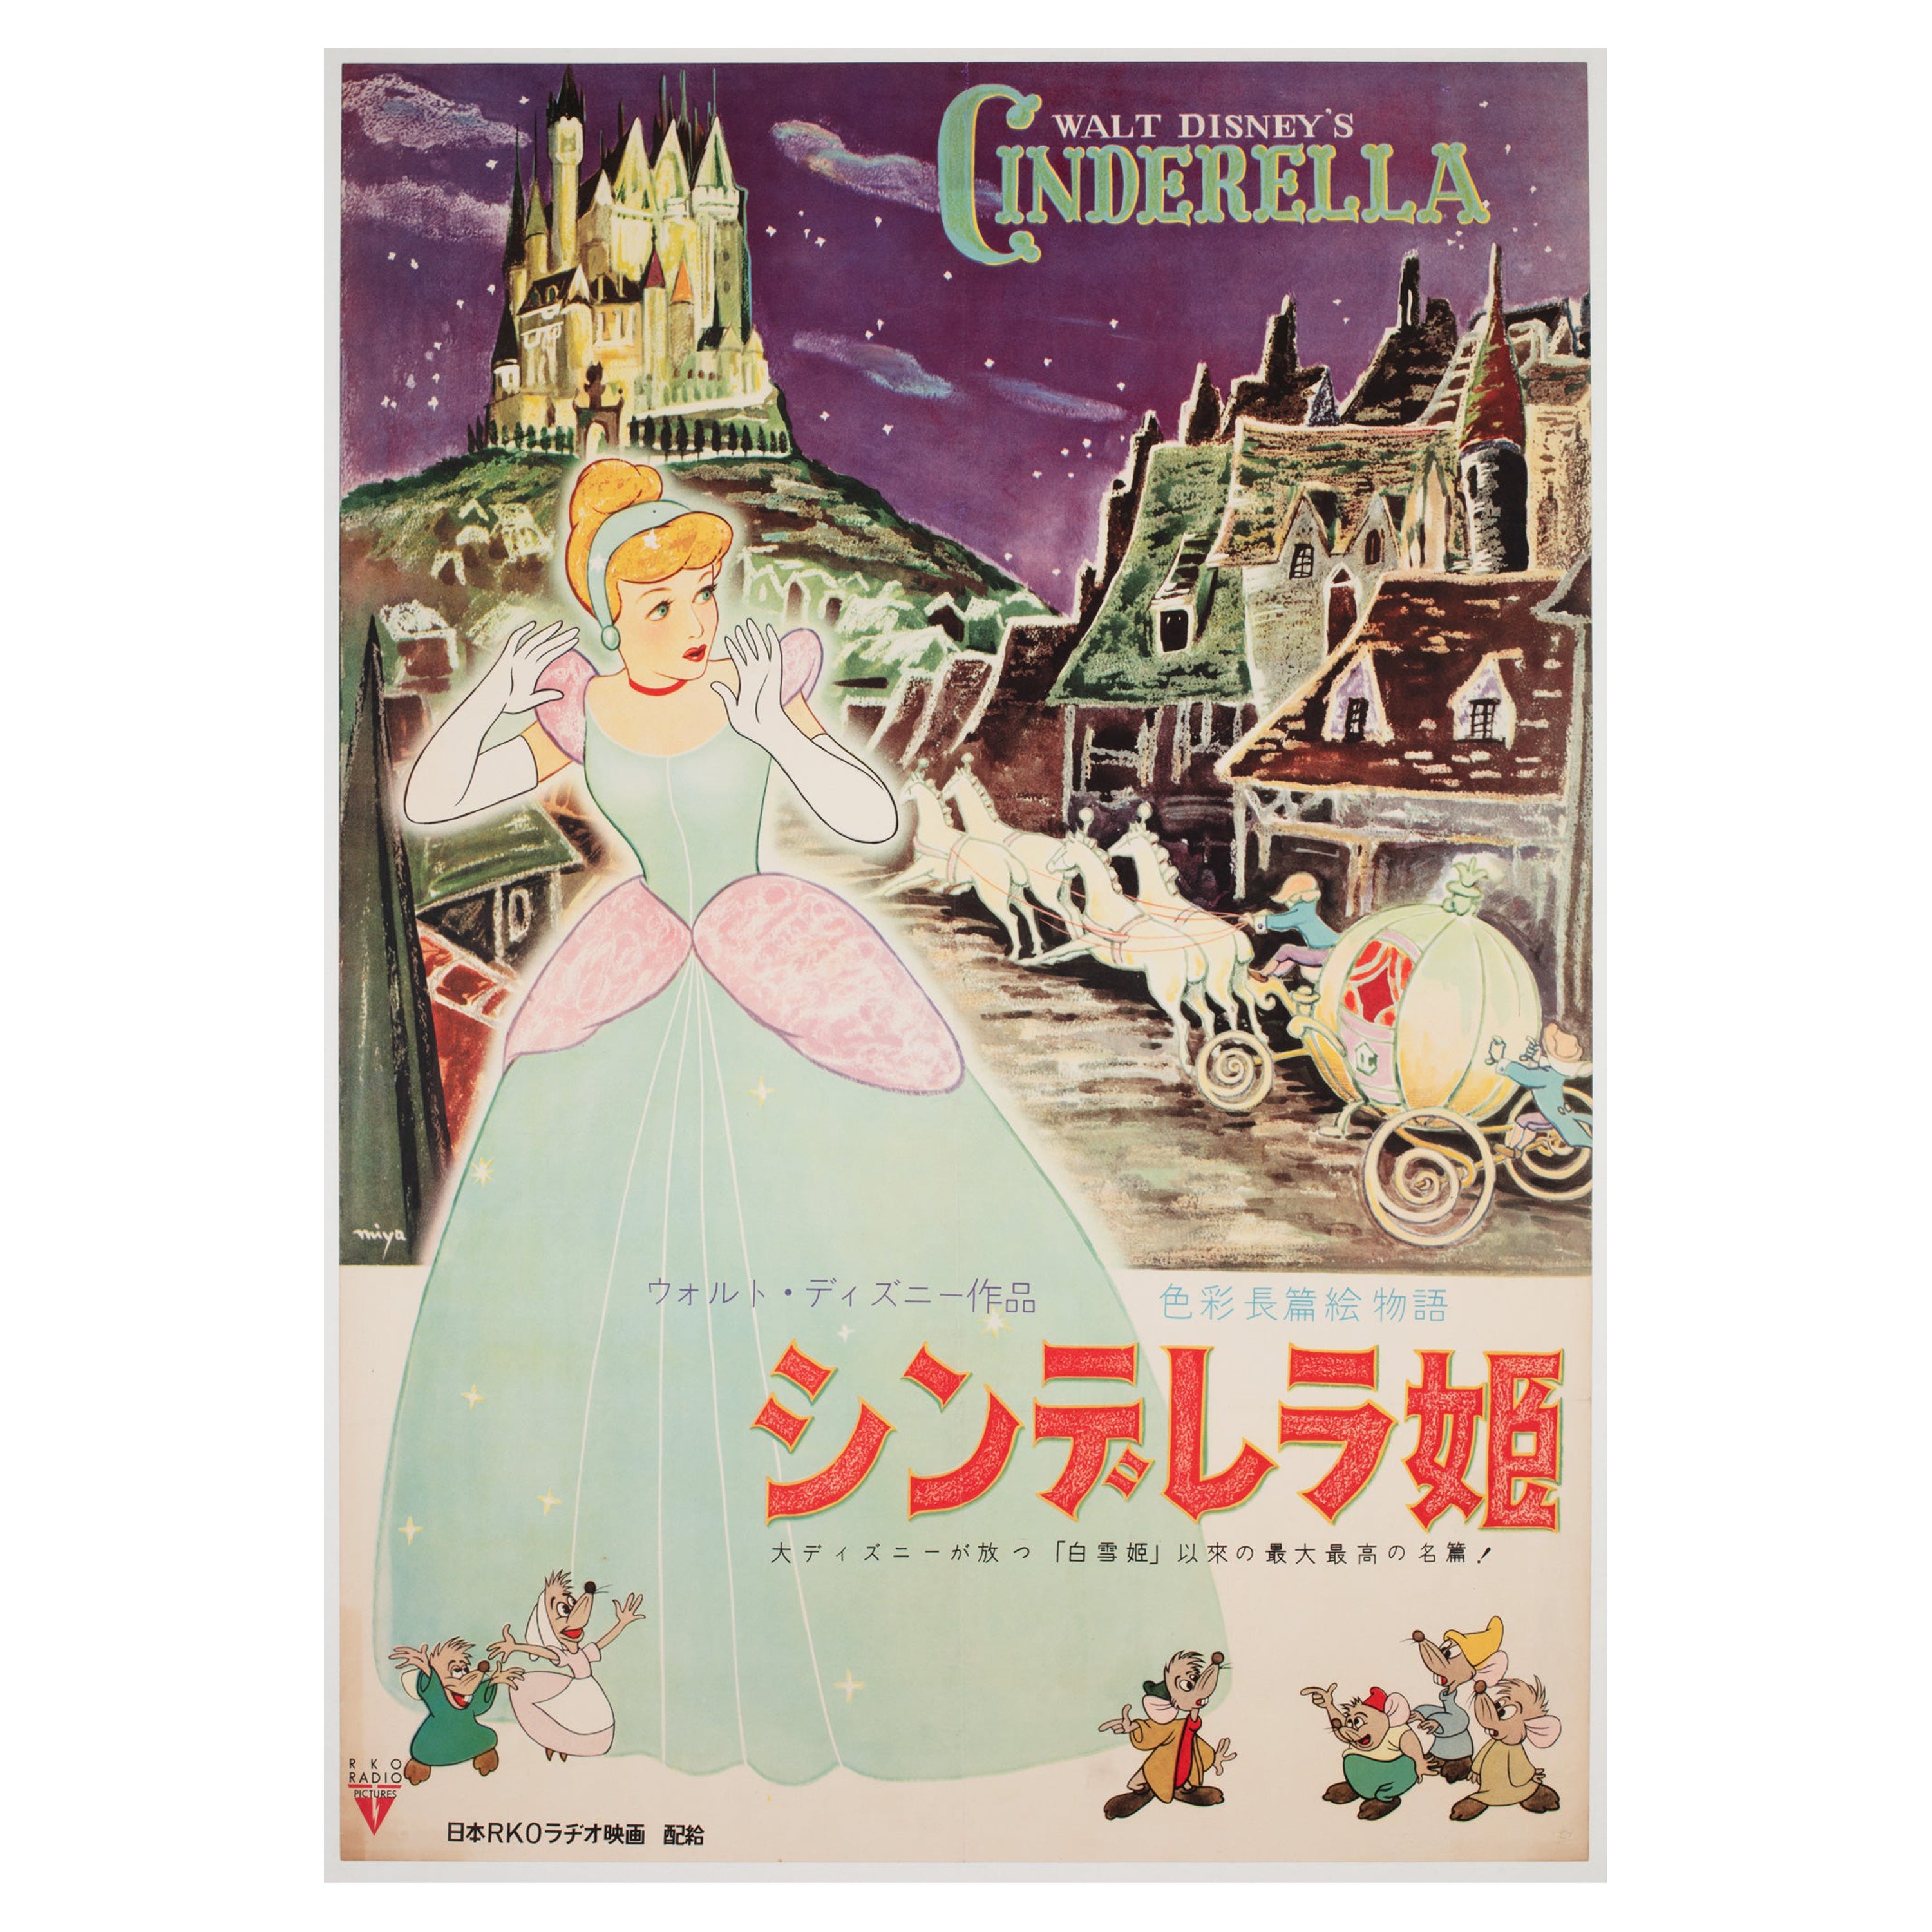 Золушка по японски. Золушка 1950 Постер. Золушка Япония. Золушка плакат. Синдерелла Vintage.